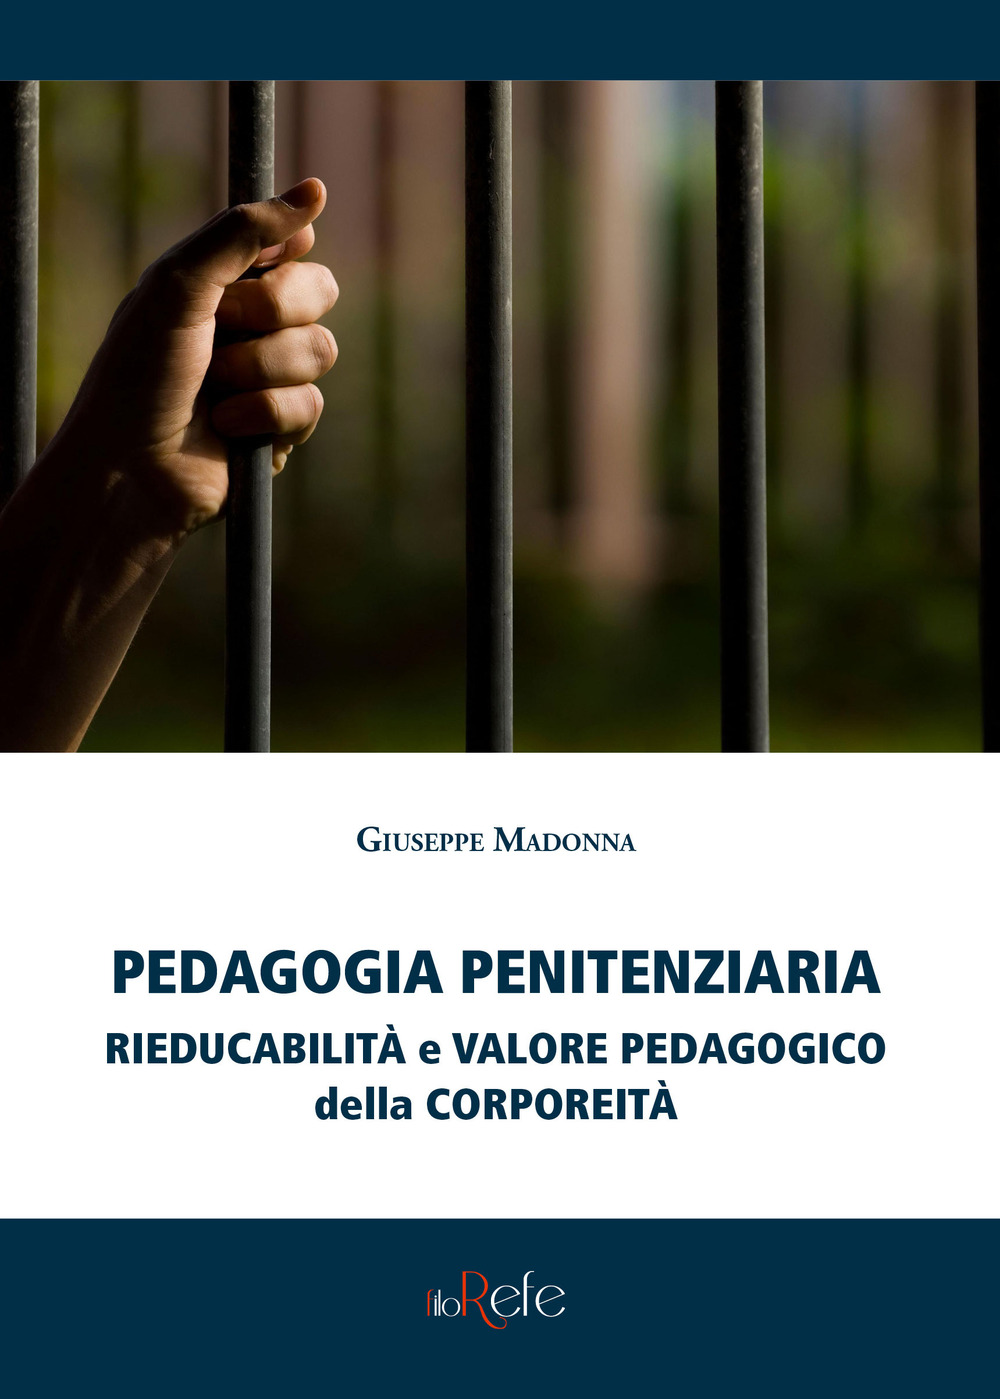 Pedagogia penitenziaria: rieducabilità e valore pedagogico della corporeità